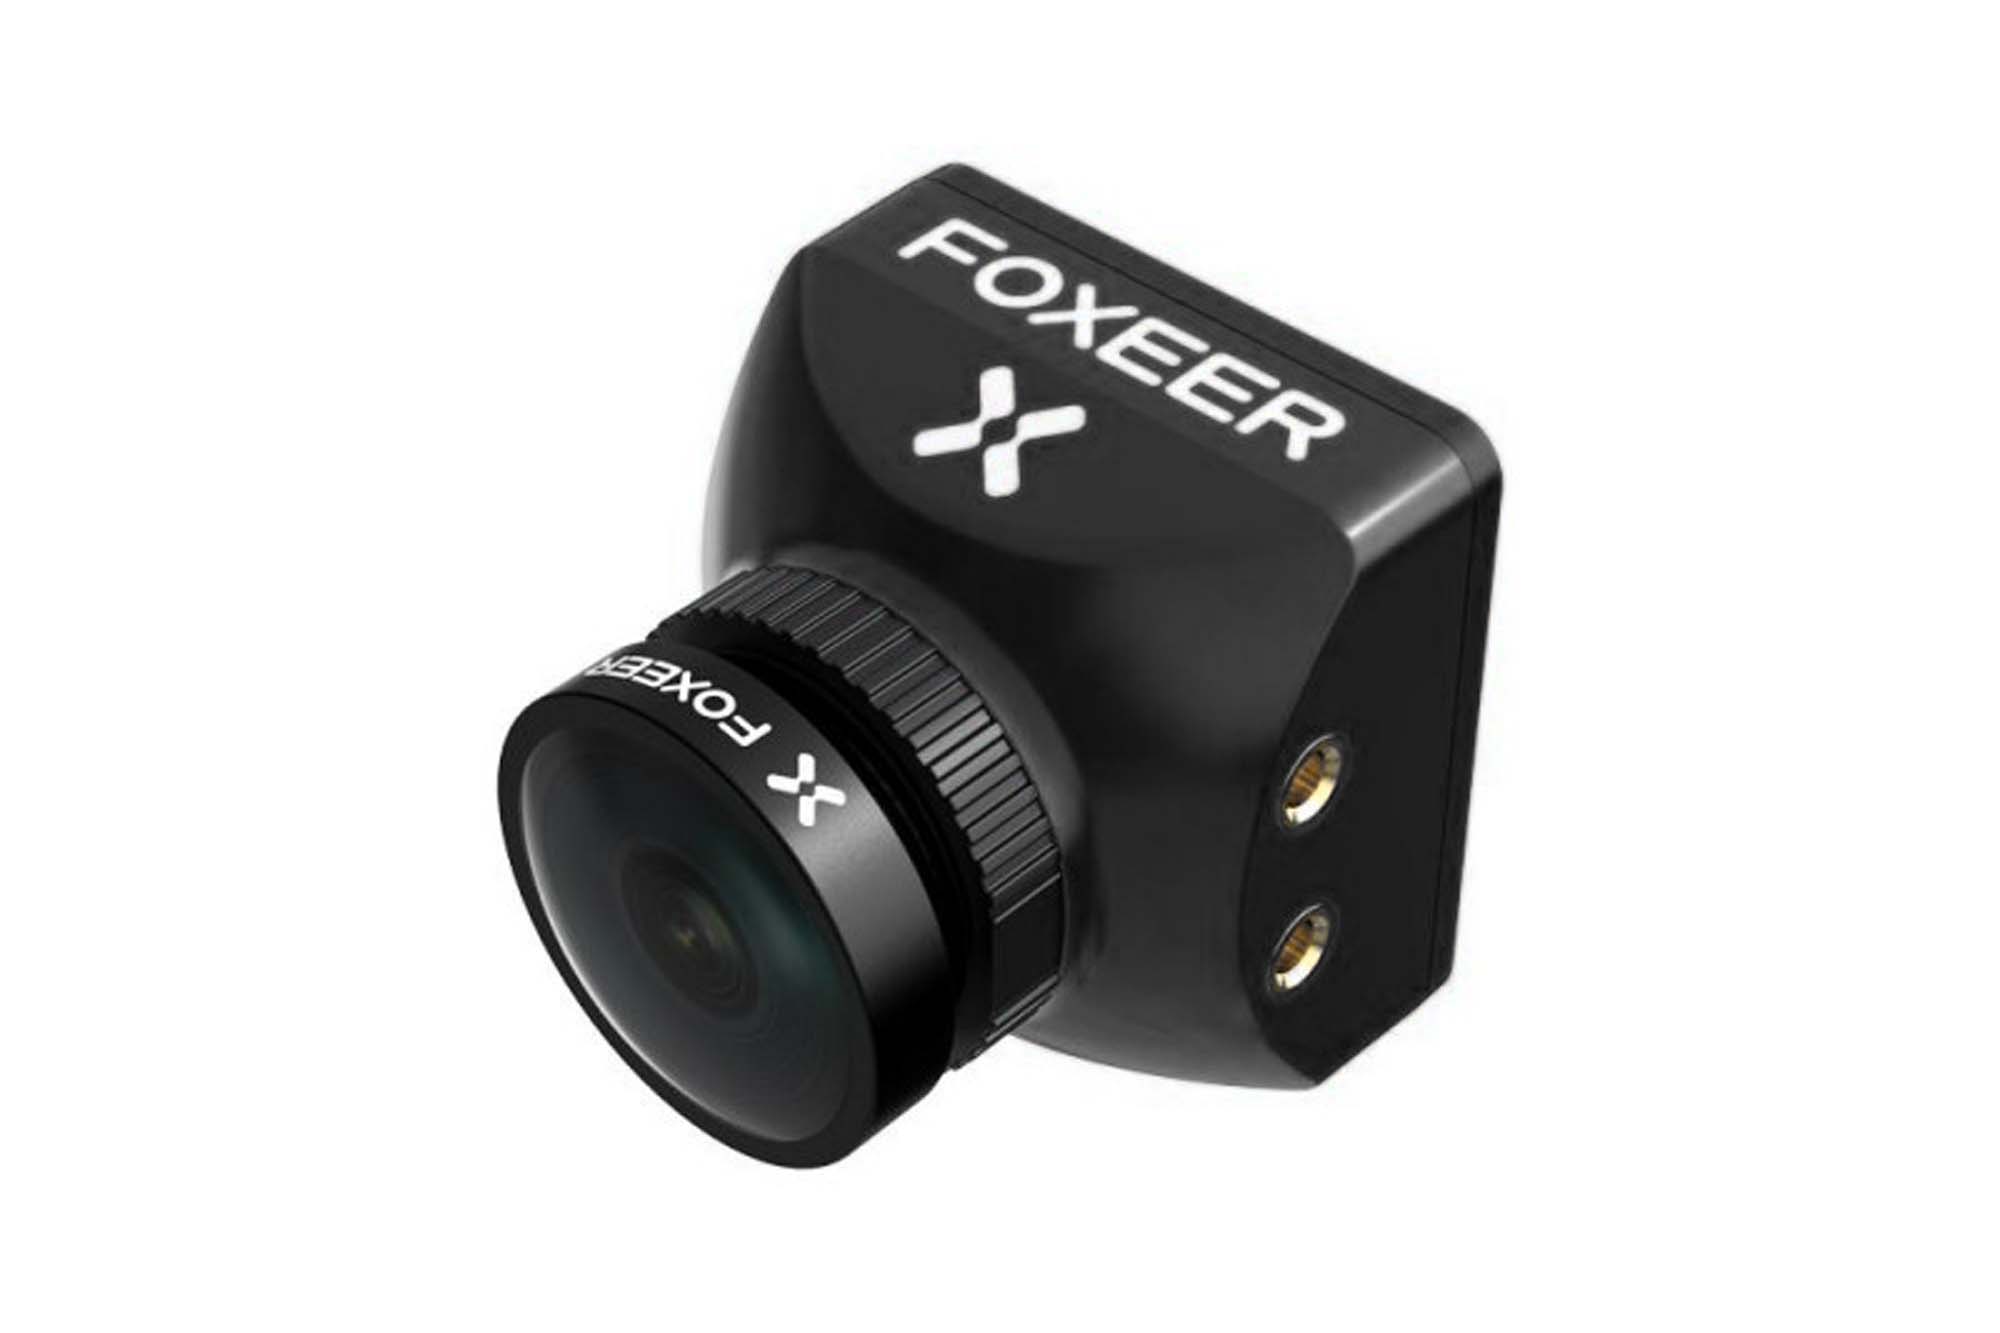 Foxeer Mini Toothless 2 1200TVL FPV Camera